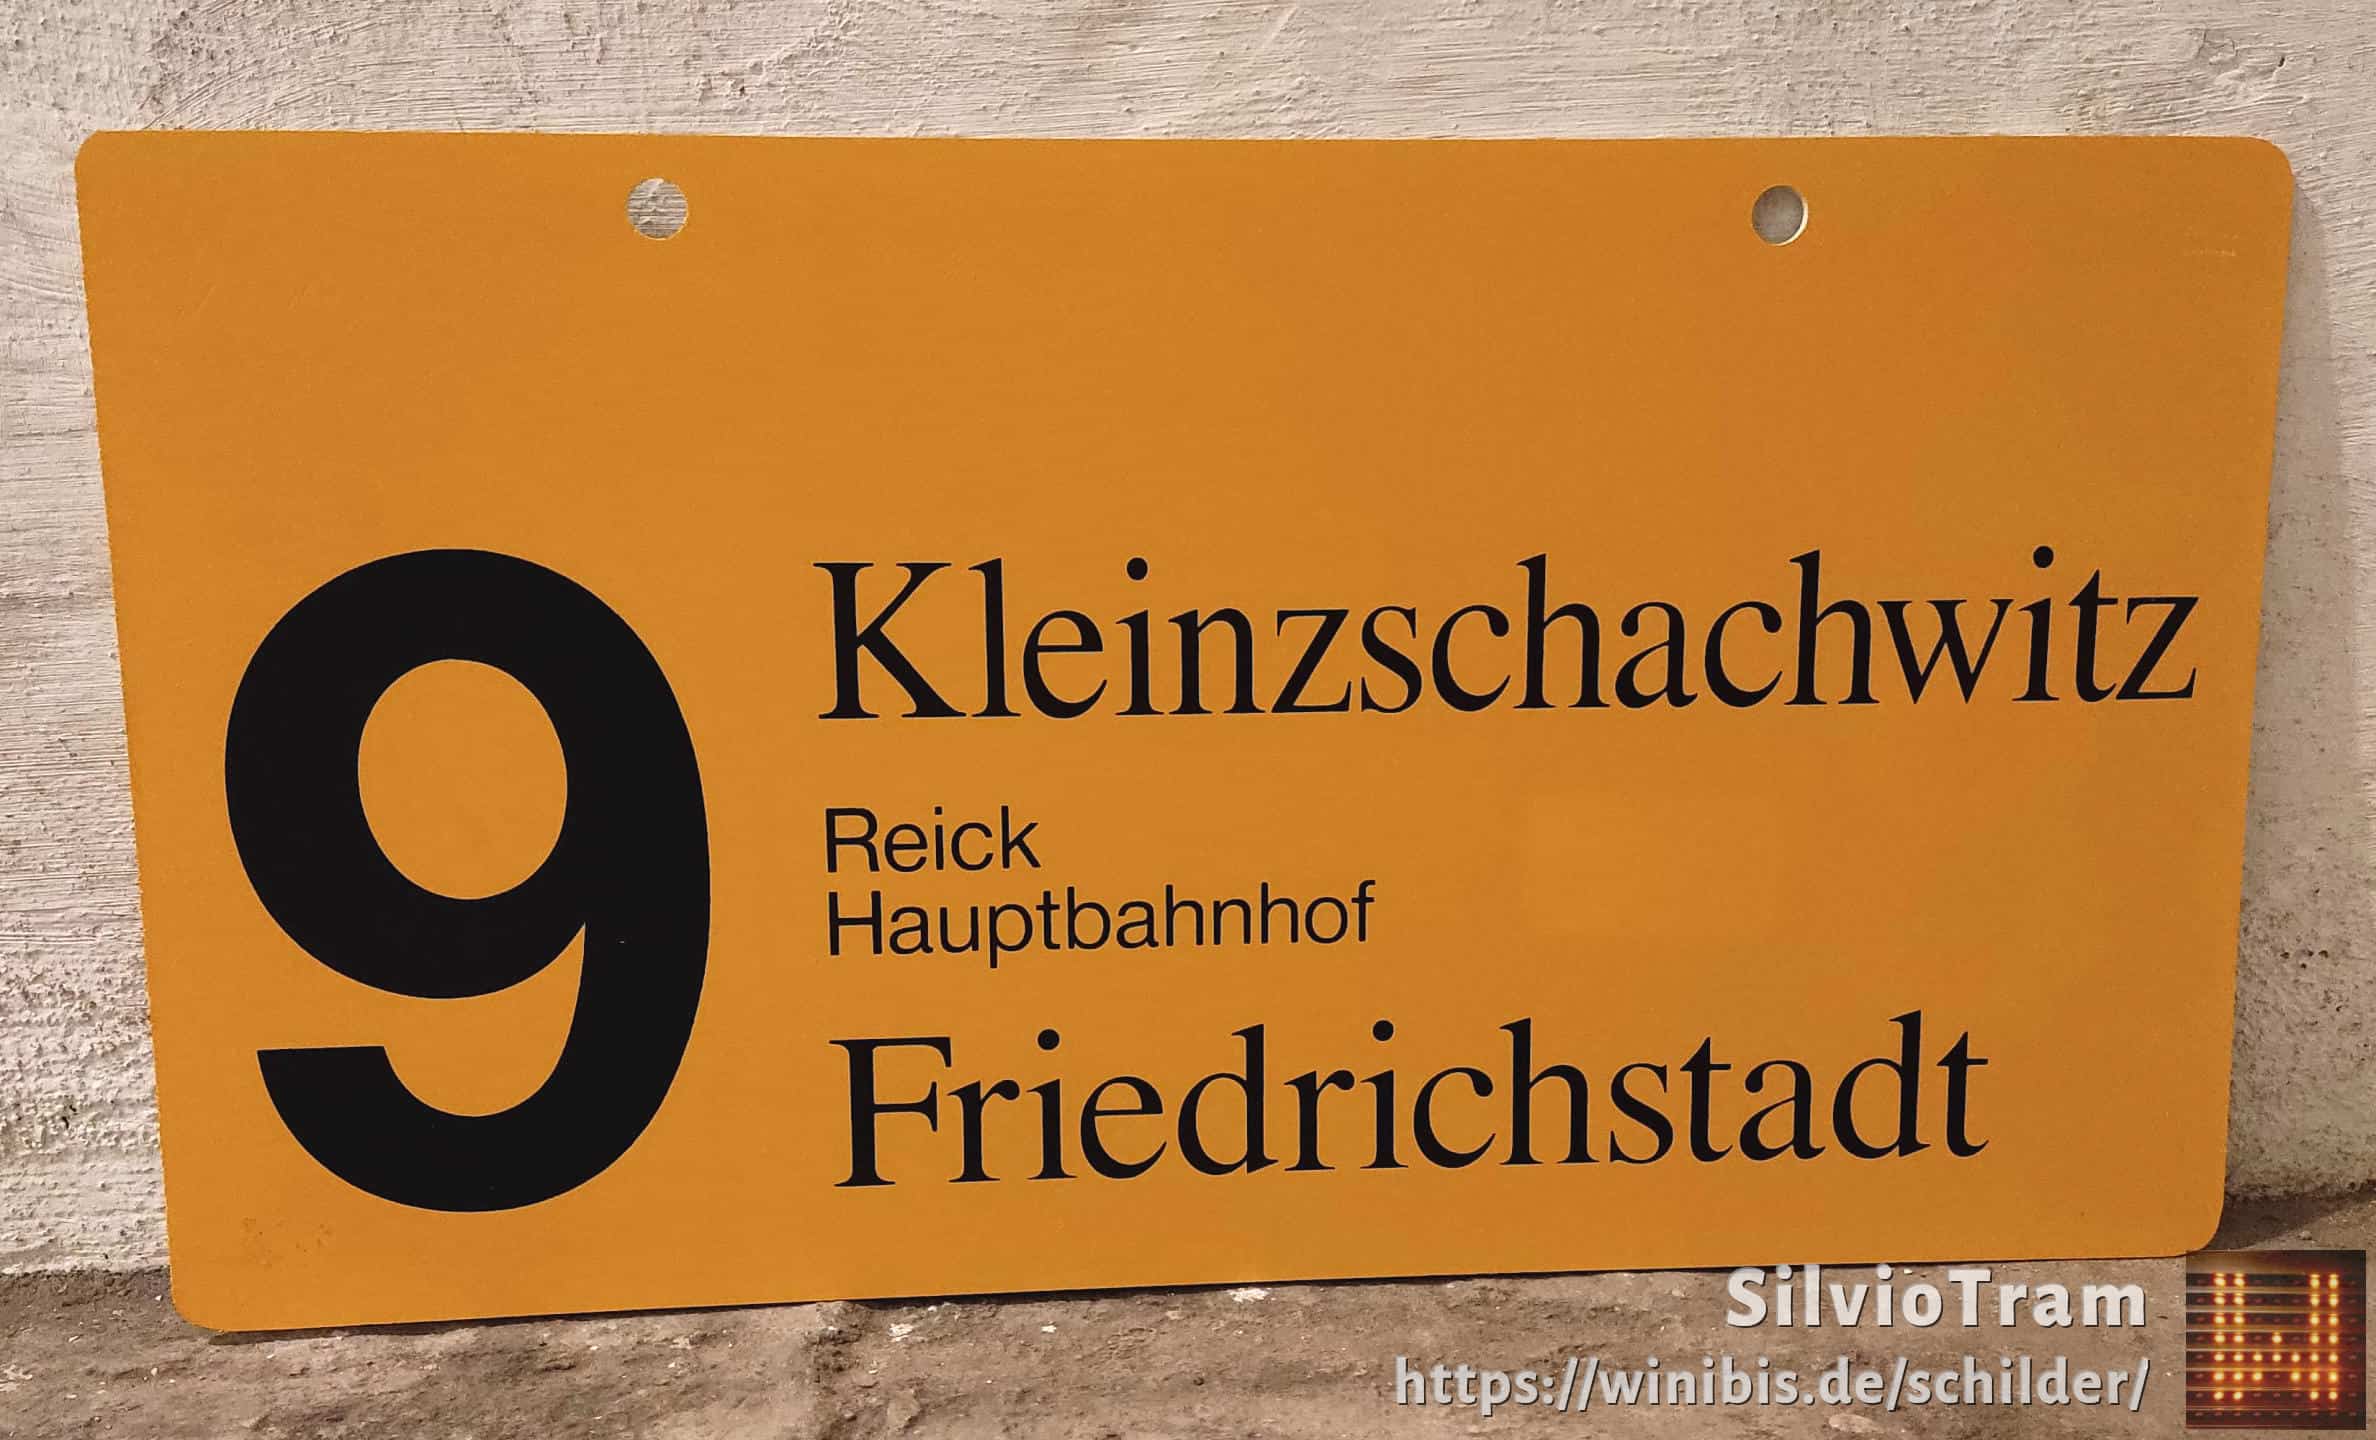 9 Kleinzschachwitz – Friedrichstadt #1